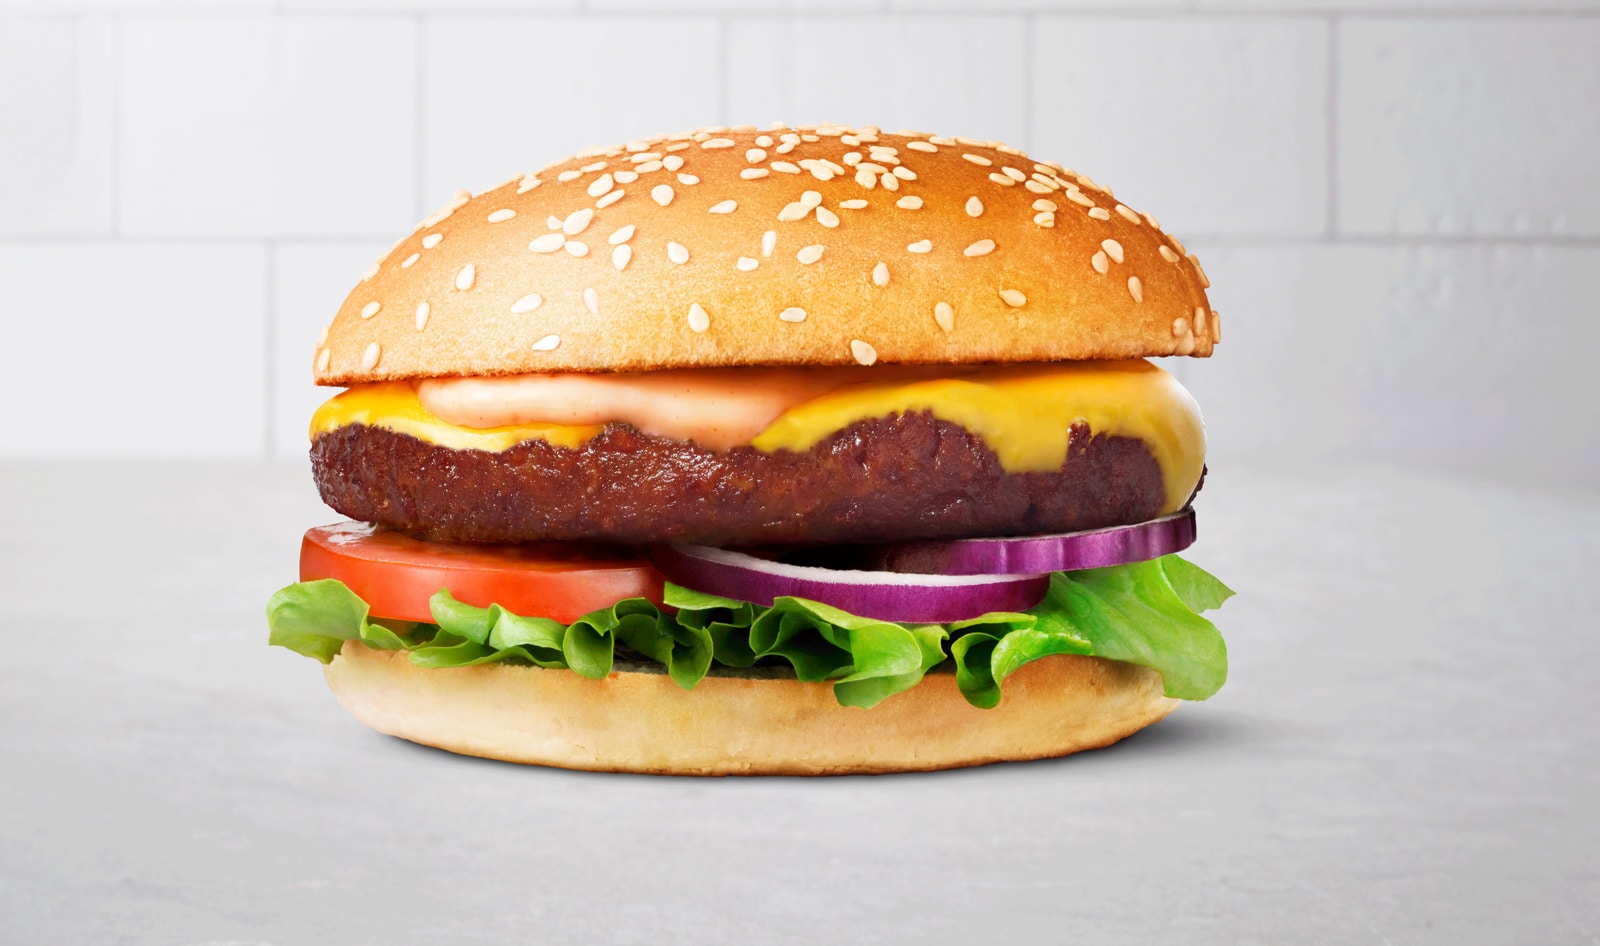 Sweden’s Top Fast-Food Chain Develops Its Own Vegan Beef